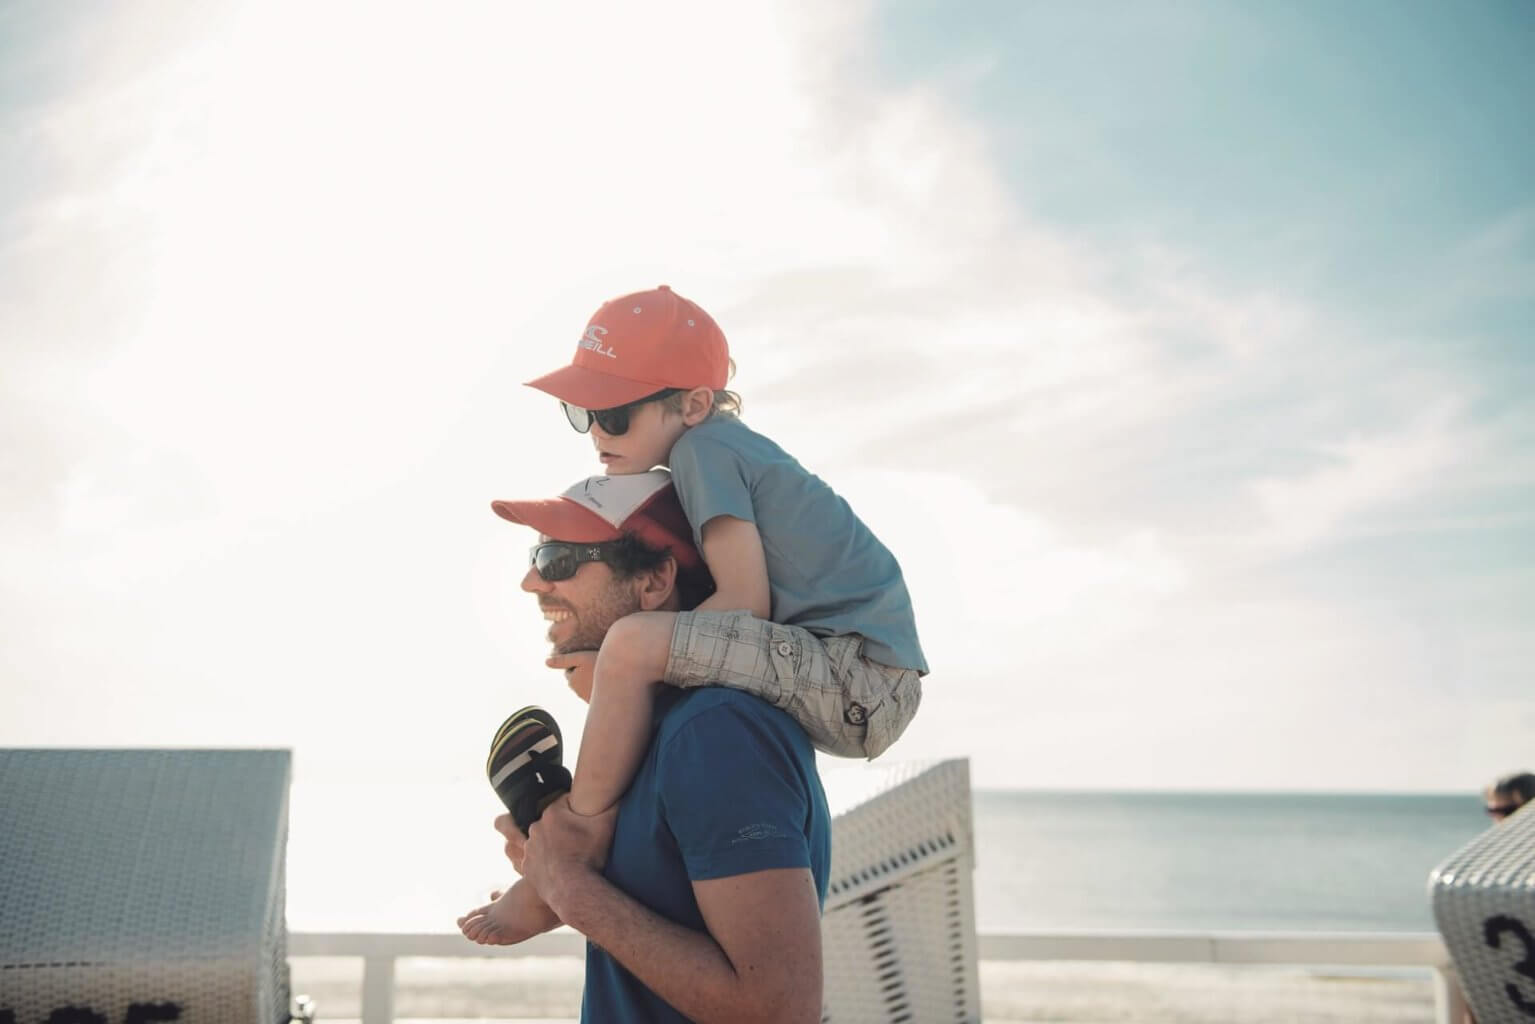 Kurzurlaub auf Sylt in Unterkünften für Familien- Vater mit Kind auf den Schultern bei dem Familienurlaub auf Sylt bei den Familienwochen